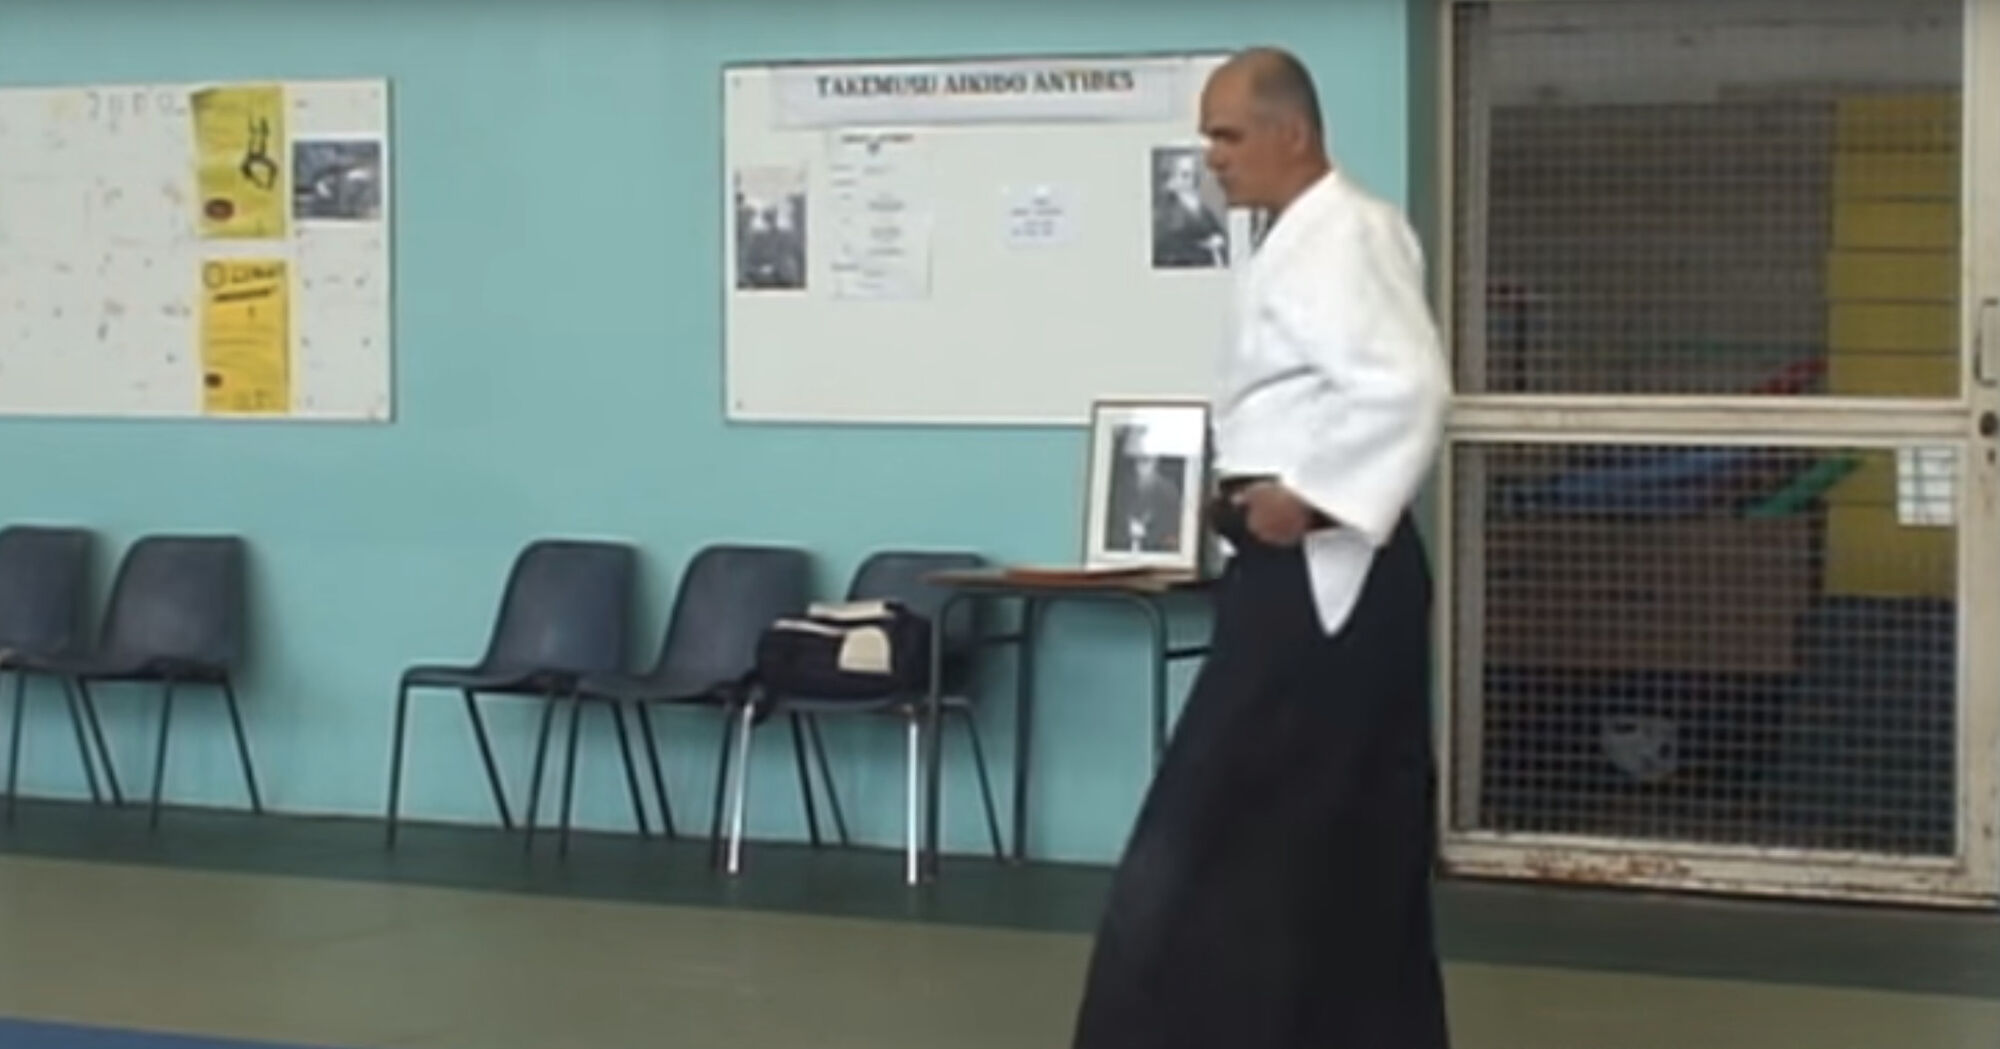 Gros plan sur le principe de déplacement de l’Aikido